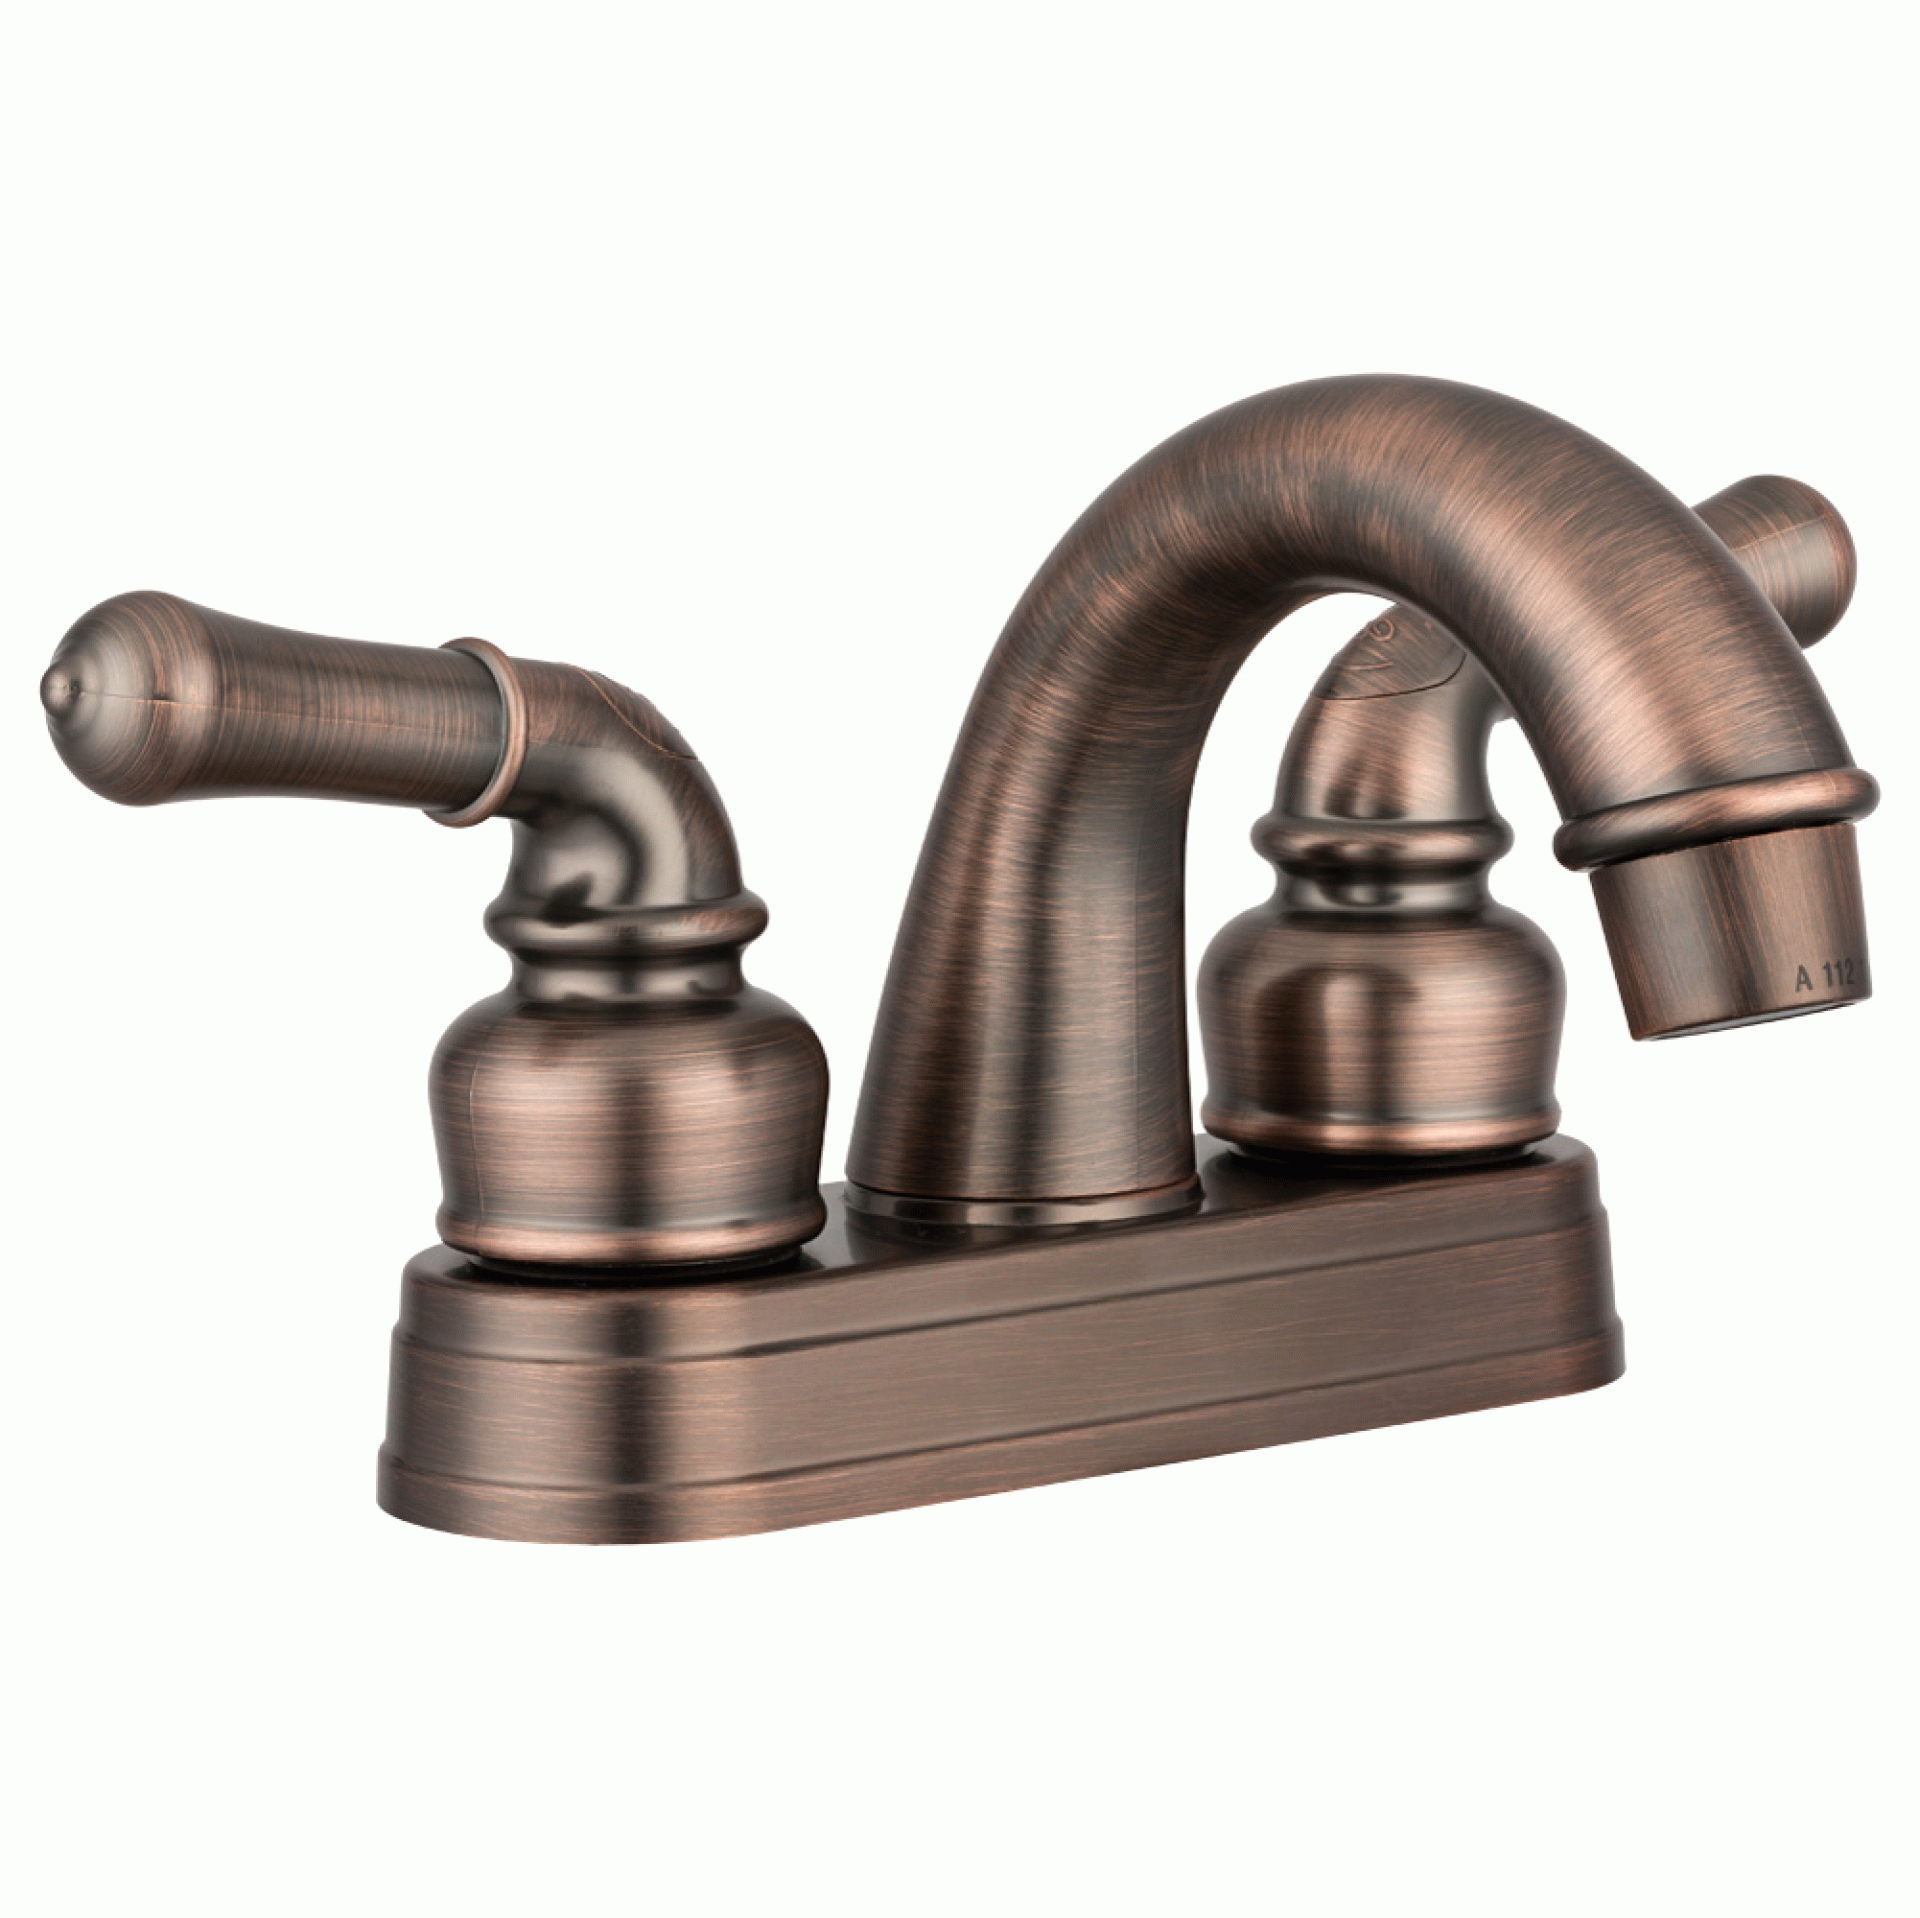 DURA FAUCET | DF-PL620C-ORB | Classical Arc Spout RV Lavatory Faucet - Oil Rubbed Bronze